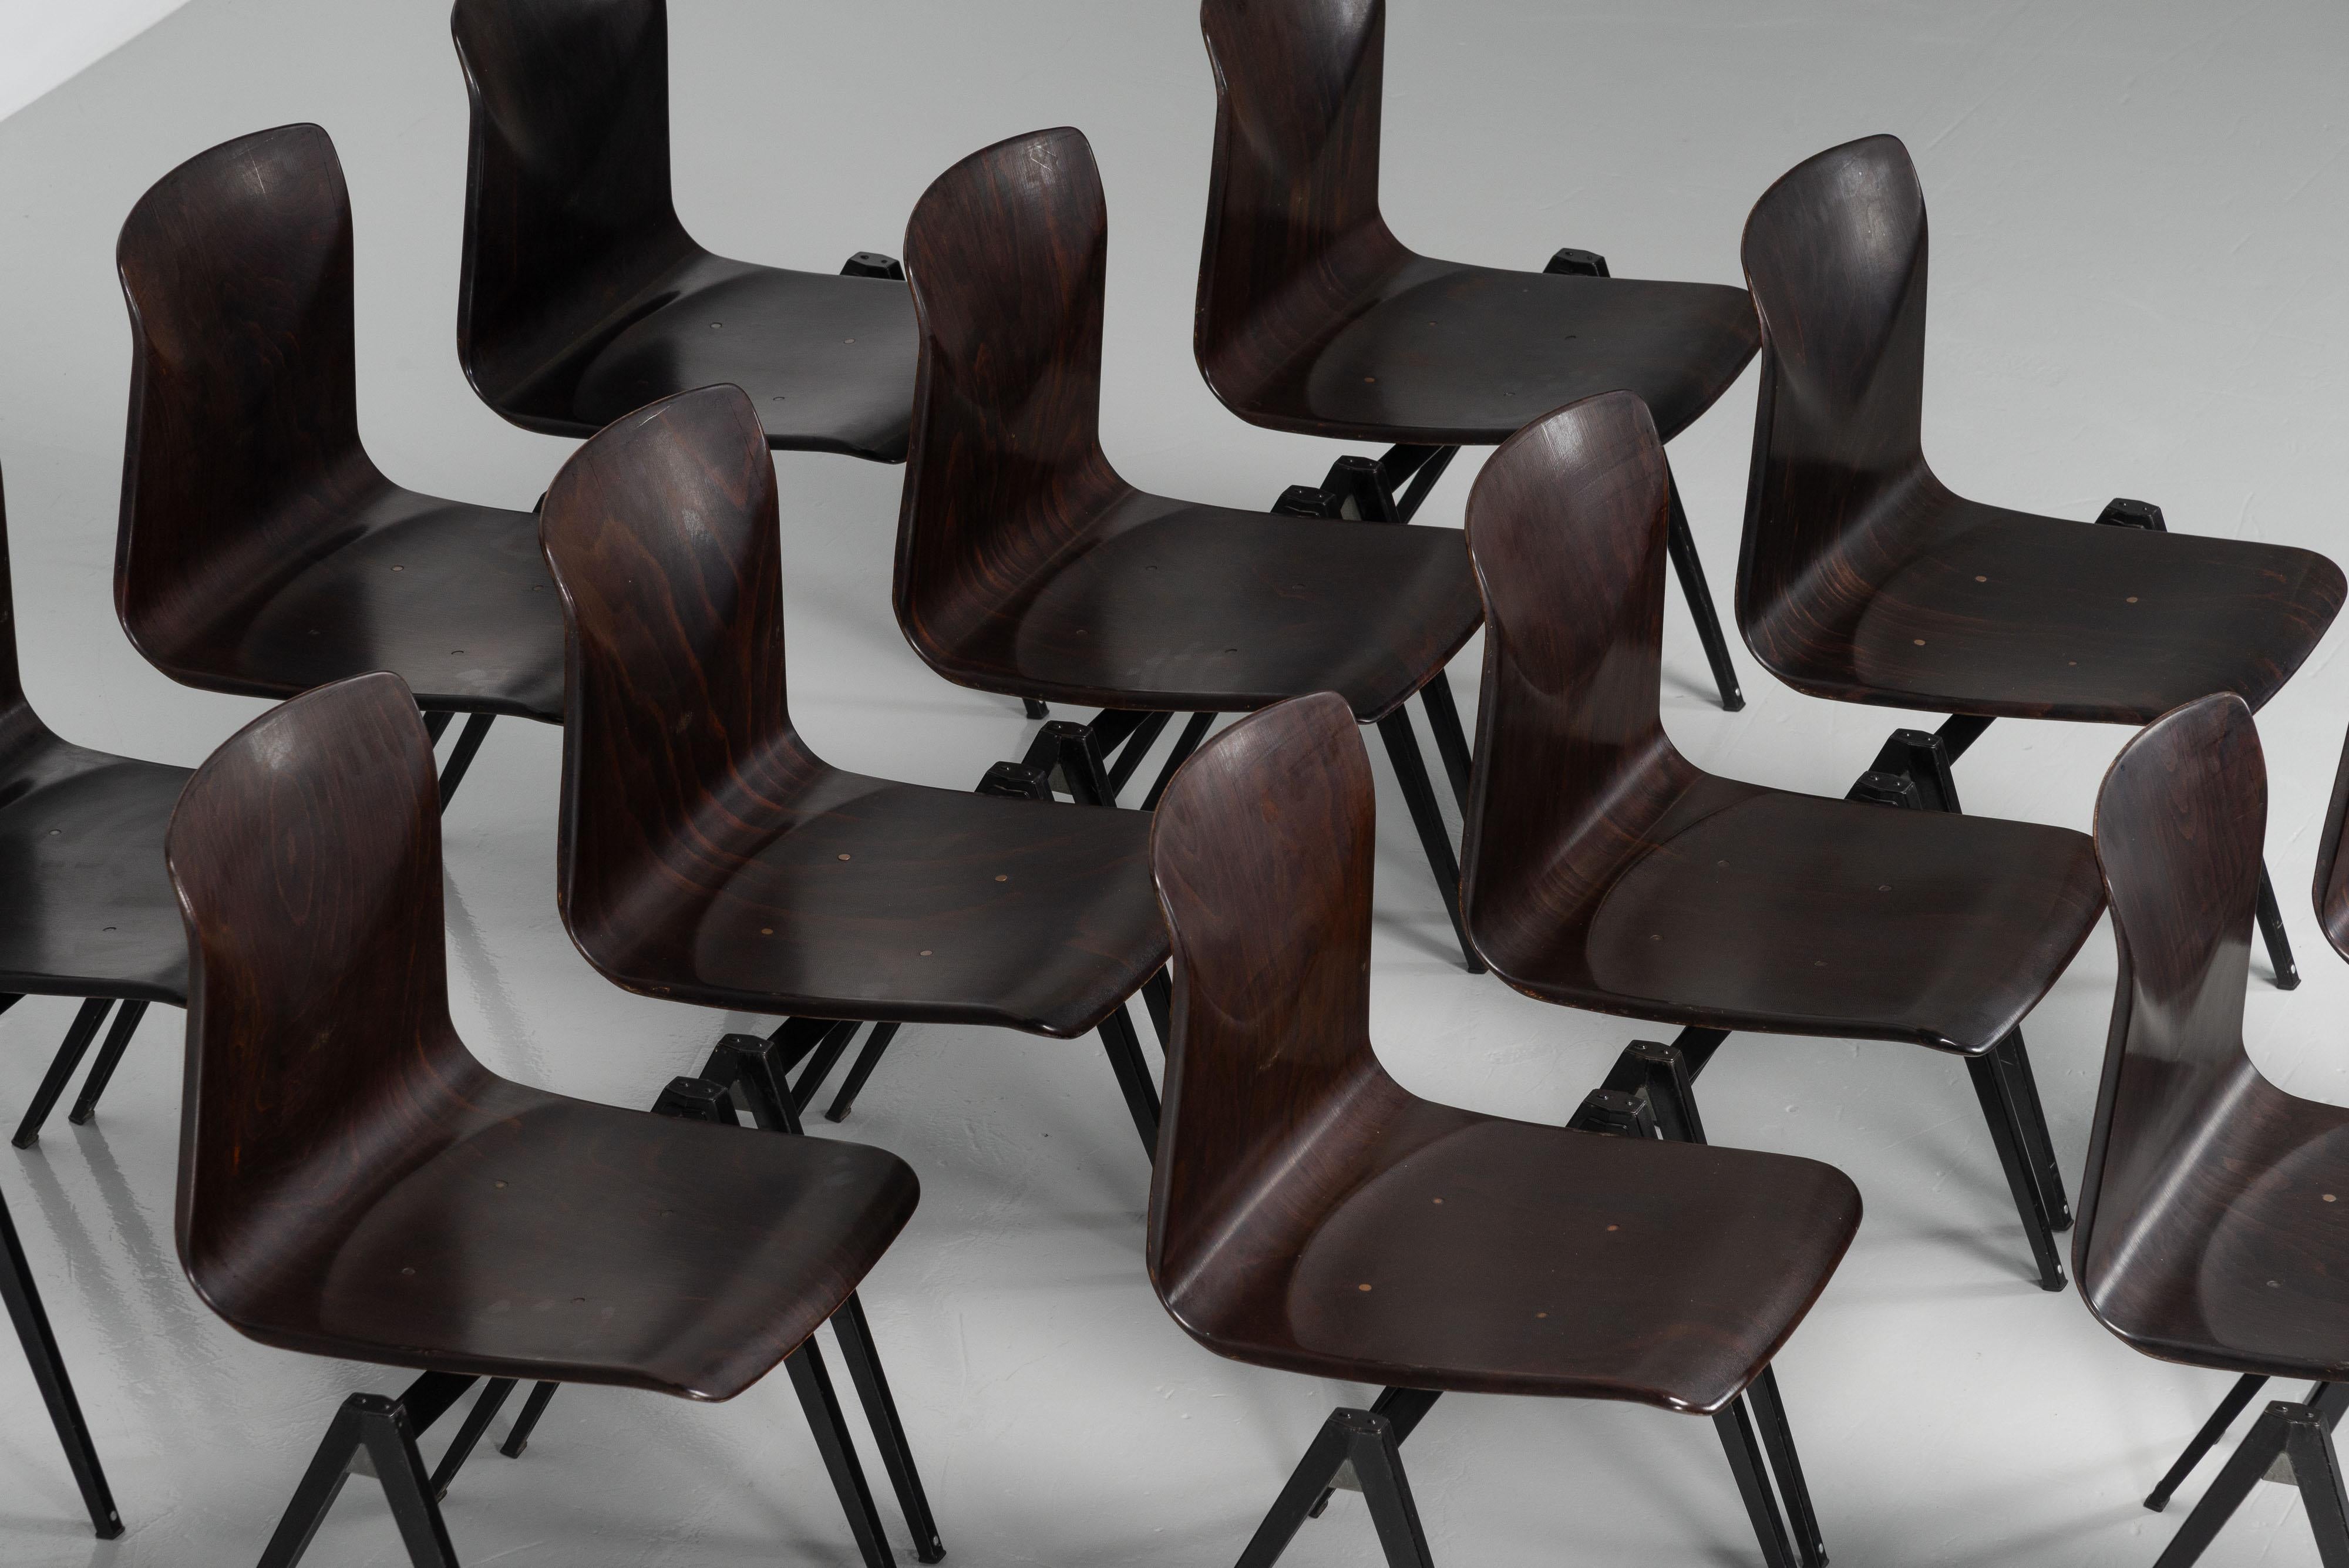 Schönes großes Set von S22 Stapelstühlen, entworfen von Elmar Flototto und hergestellt von Pagholz in Deutschland im Jahr 1970. Sie sind so konzipiert, dass sie übereinander gestapelt und ineinander gesteckt werden können. Diese Stühle sind wirklich